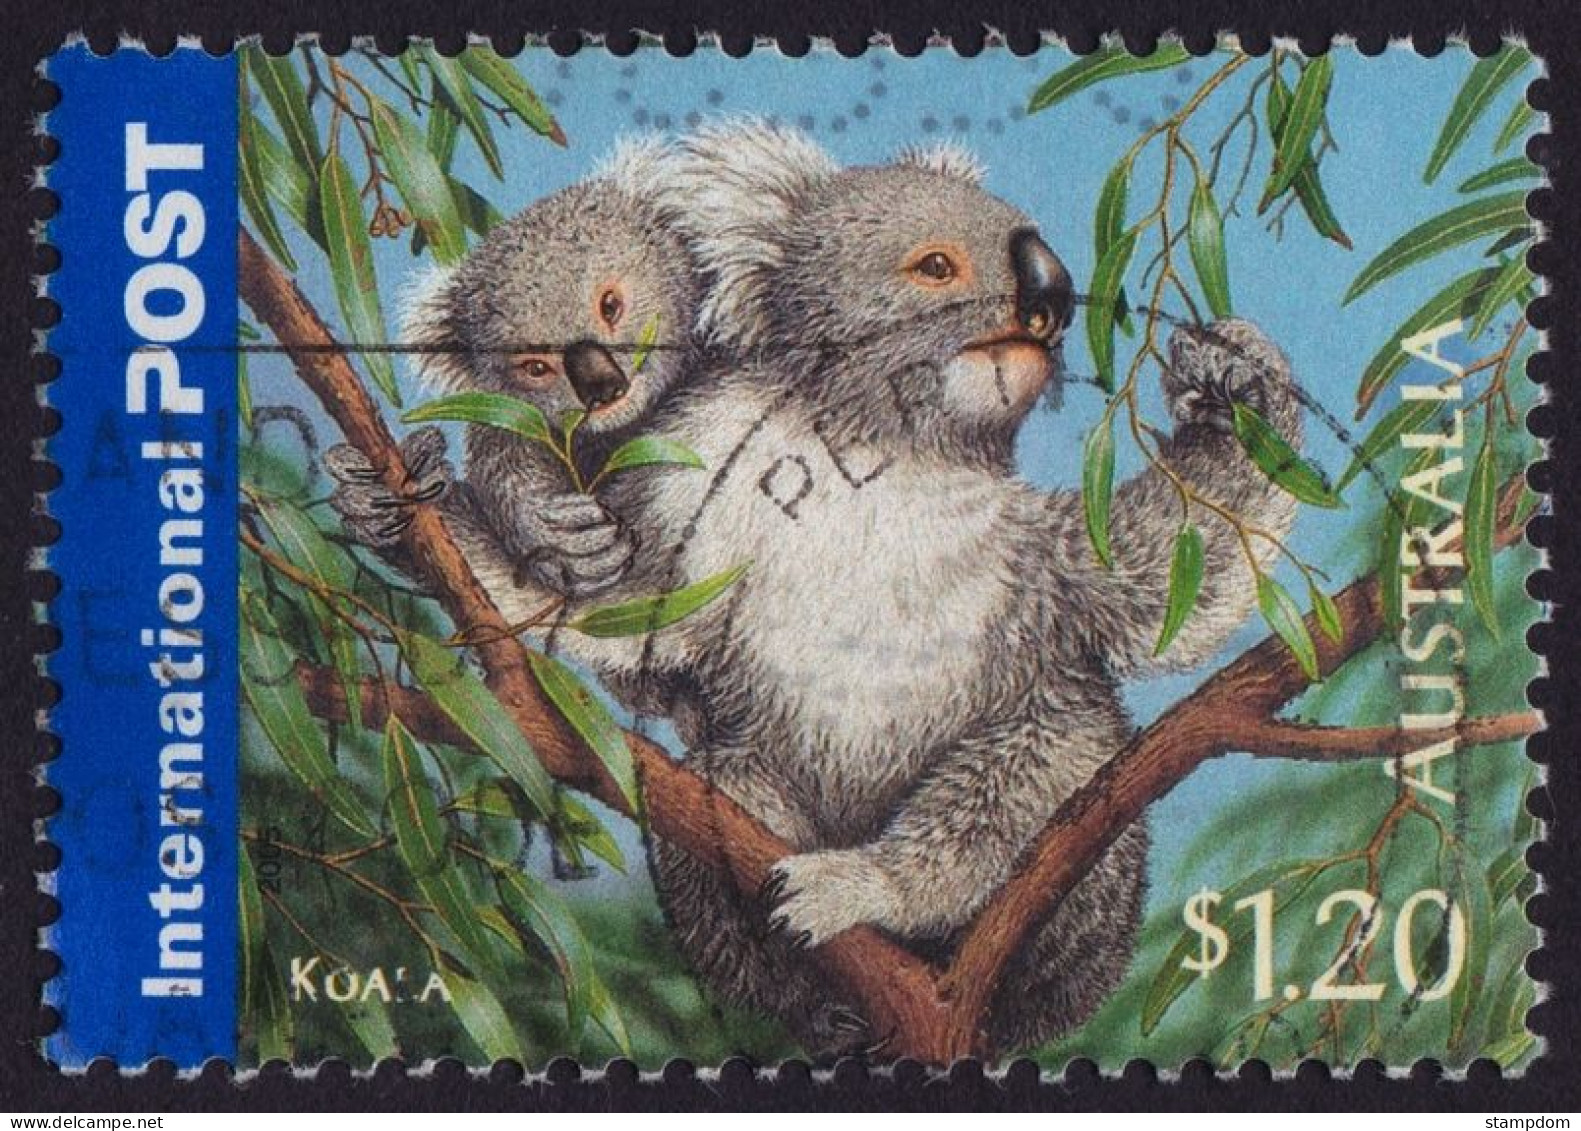 AUSTRALIA  2005 Animals Int'l Post $1.20 Koala Sc#2388 USED @O414 - Oblitérés